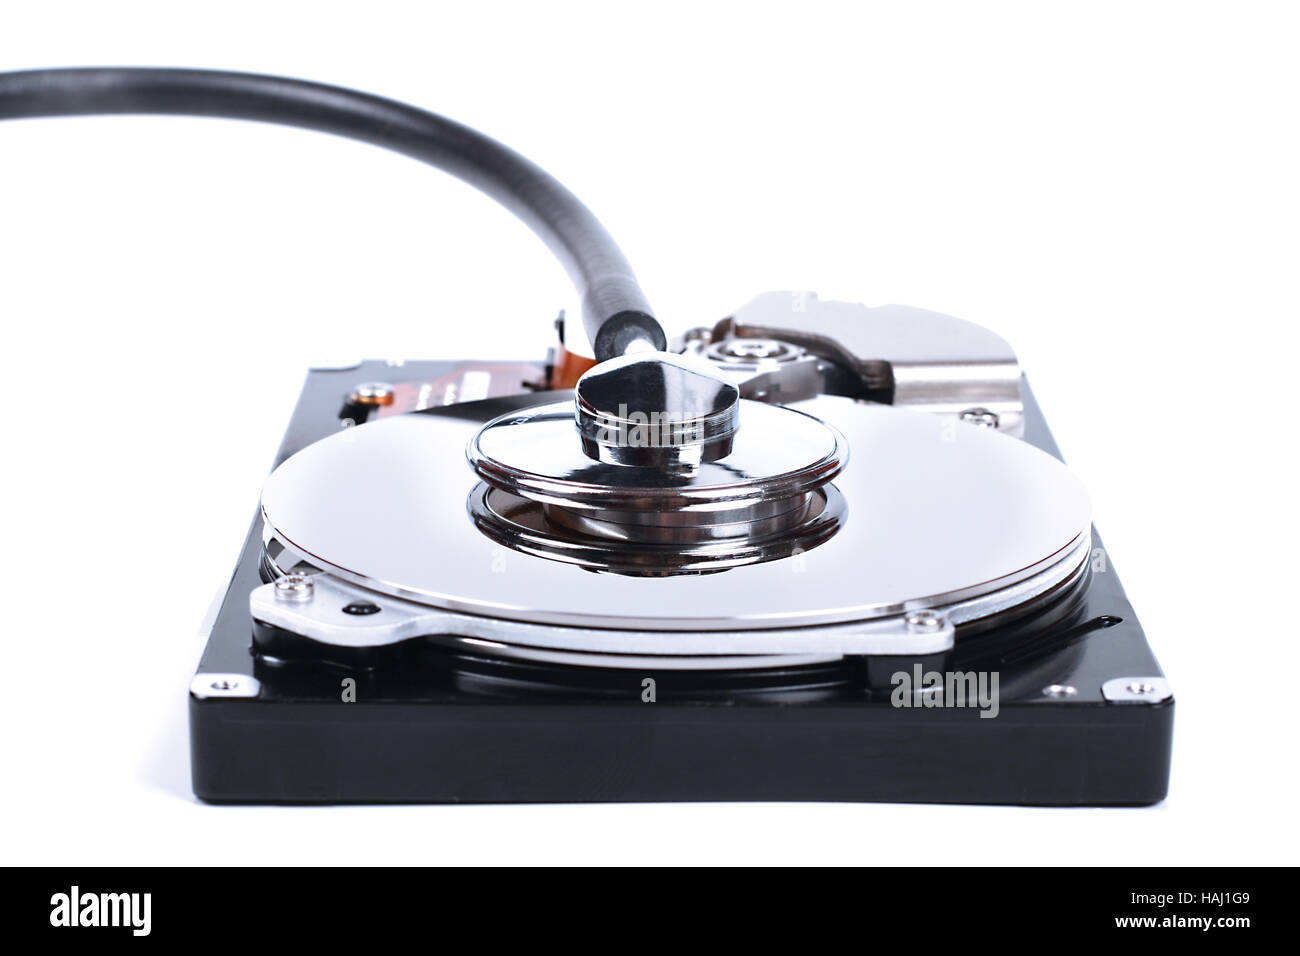 Verificación del disco duro: el disco duro de un ordenador y un estetoscopio Foto de stock